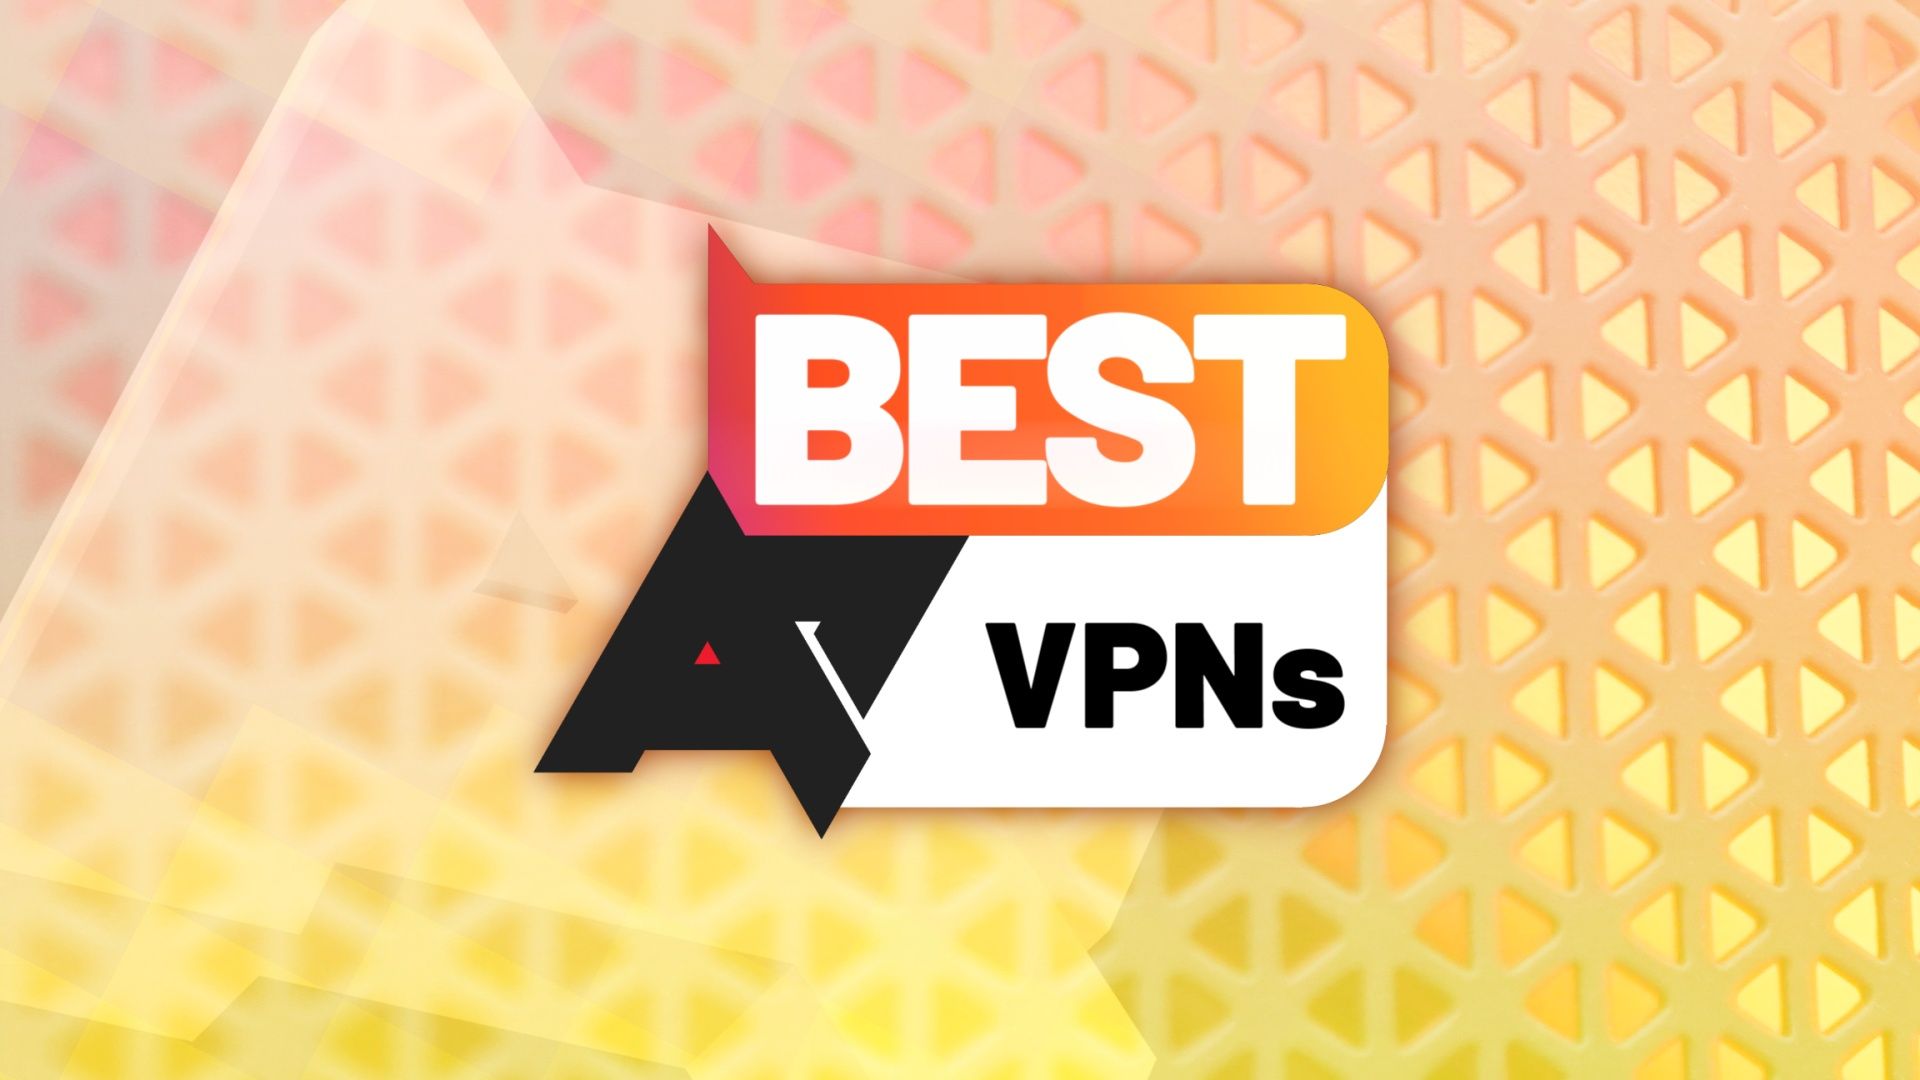 Logotipo 'Melhores VPNs' na frente de um fundo laranja texturizado